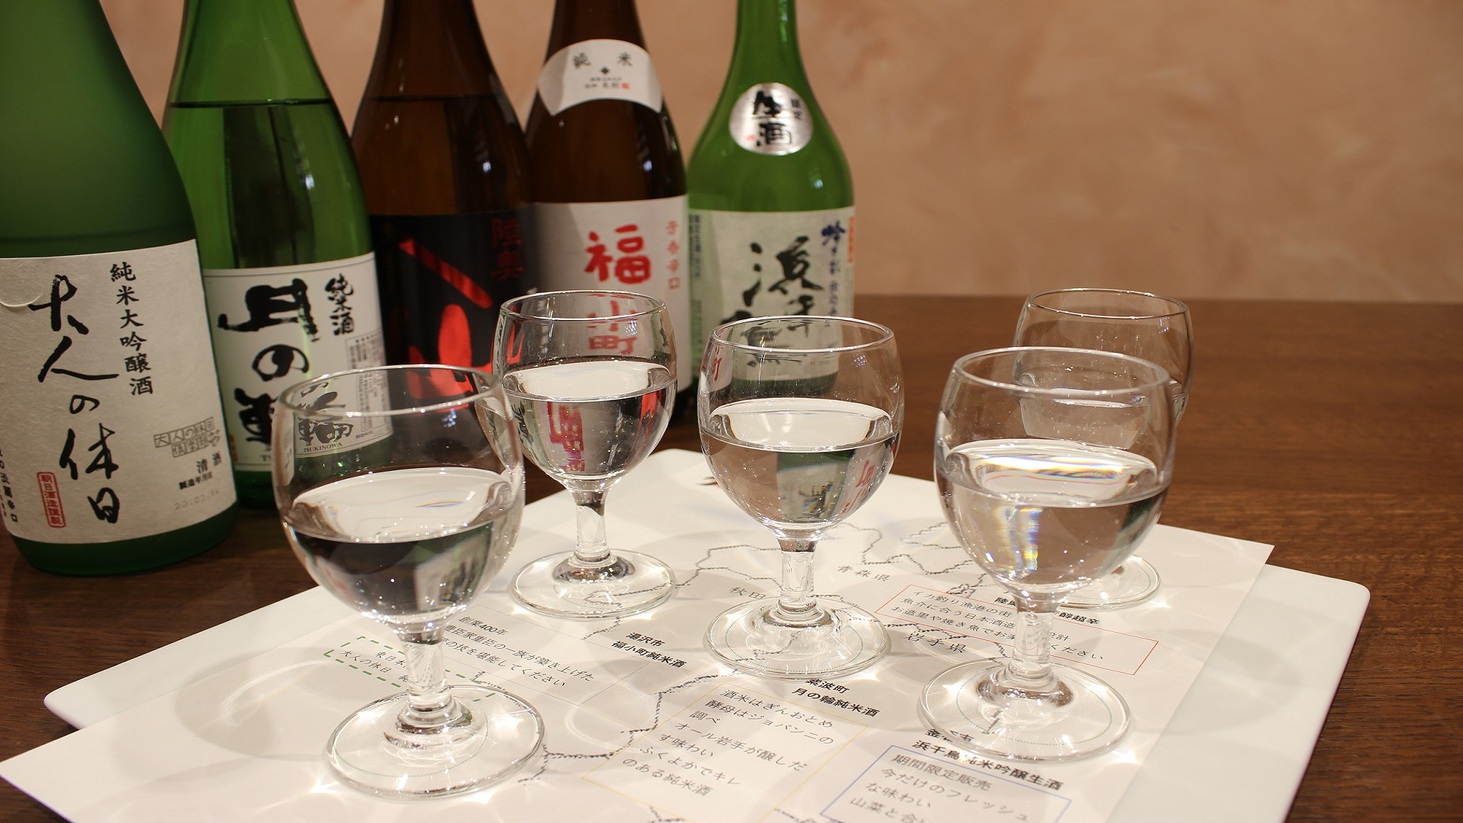 【日本料理対い鶴】北東北巡り旅利き酒セットと共にお食事をお楽しみください